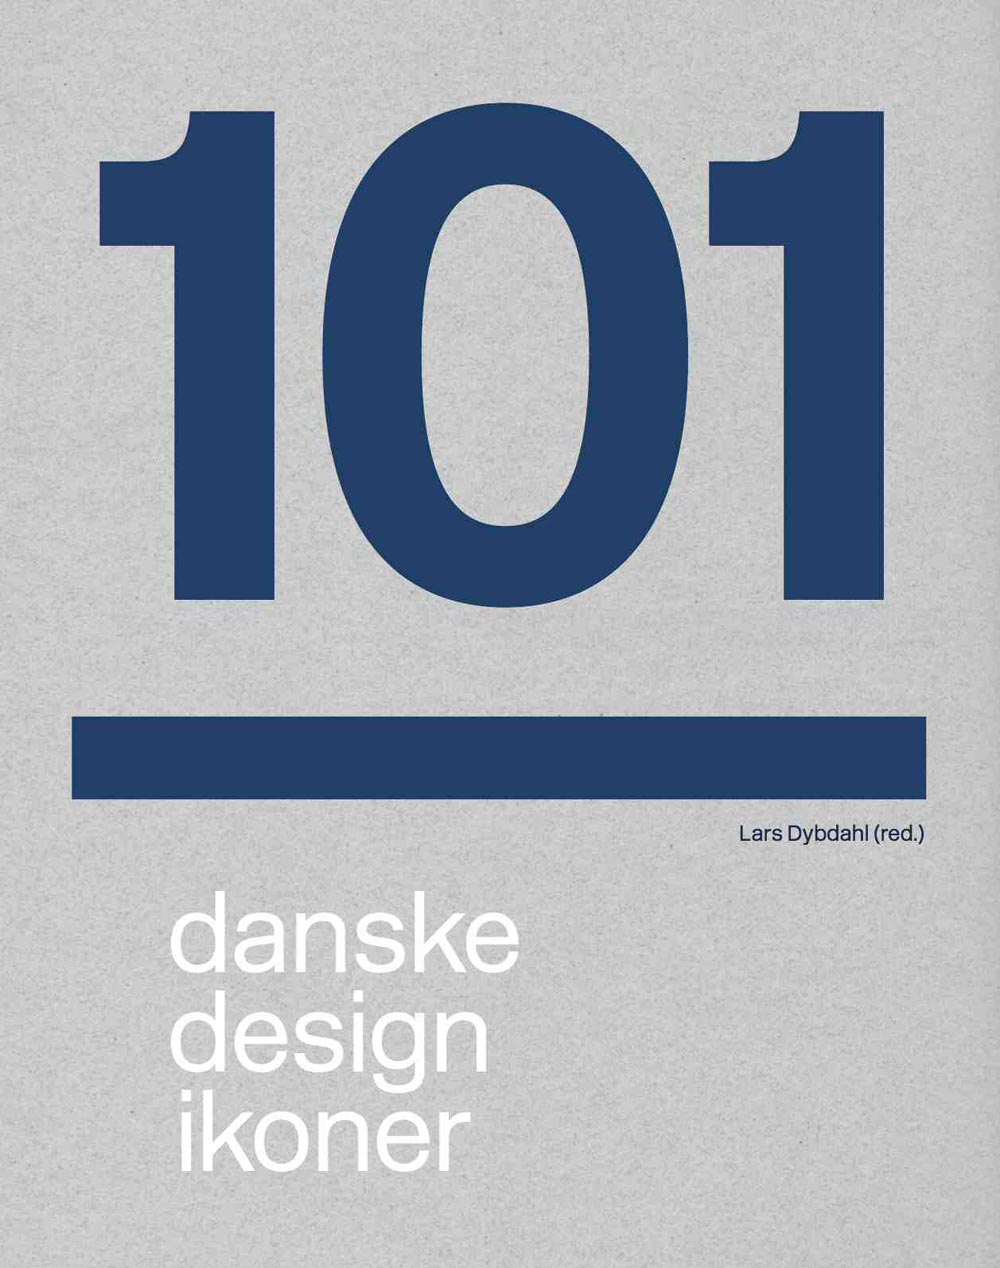 101 danske design ikoner, lars dybdahl